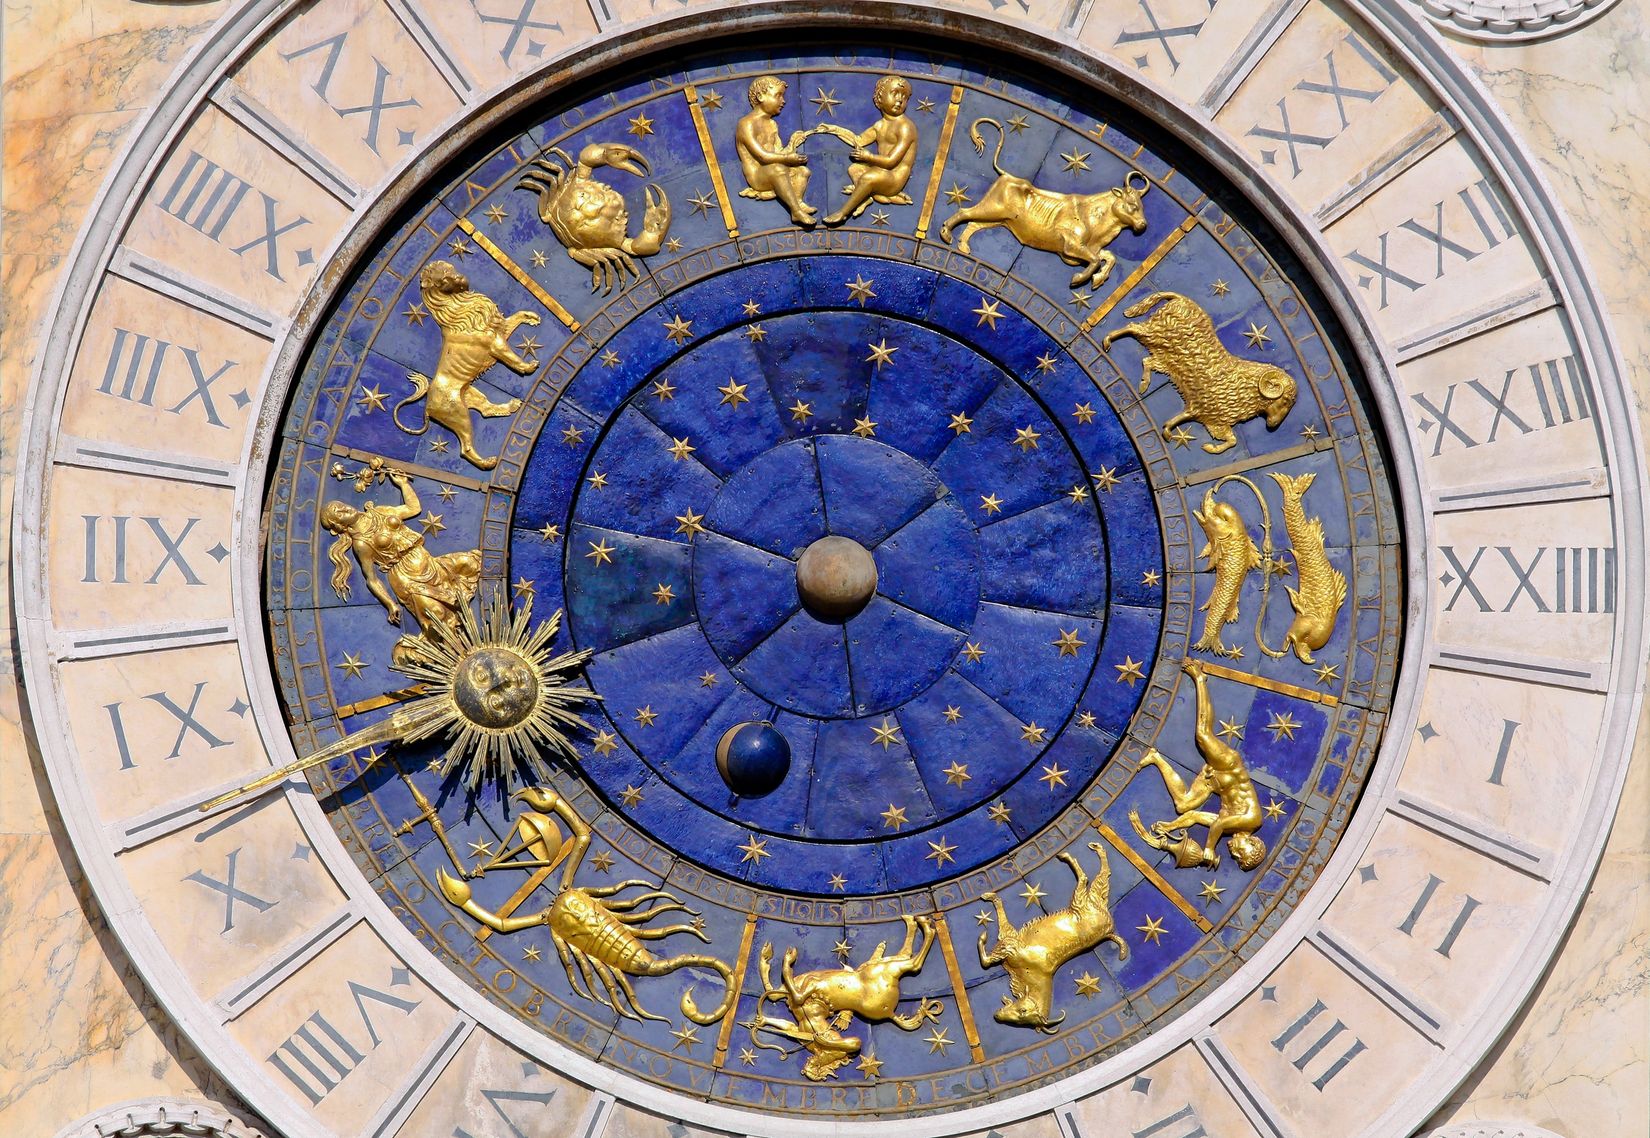 Astrologiskolen Herkules AS ved Gisle Henden - Send us files!